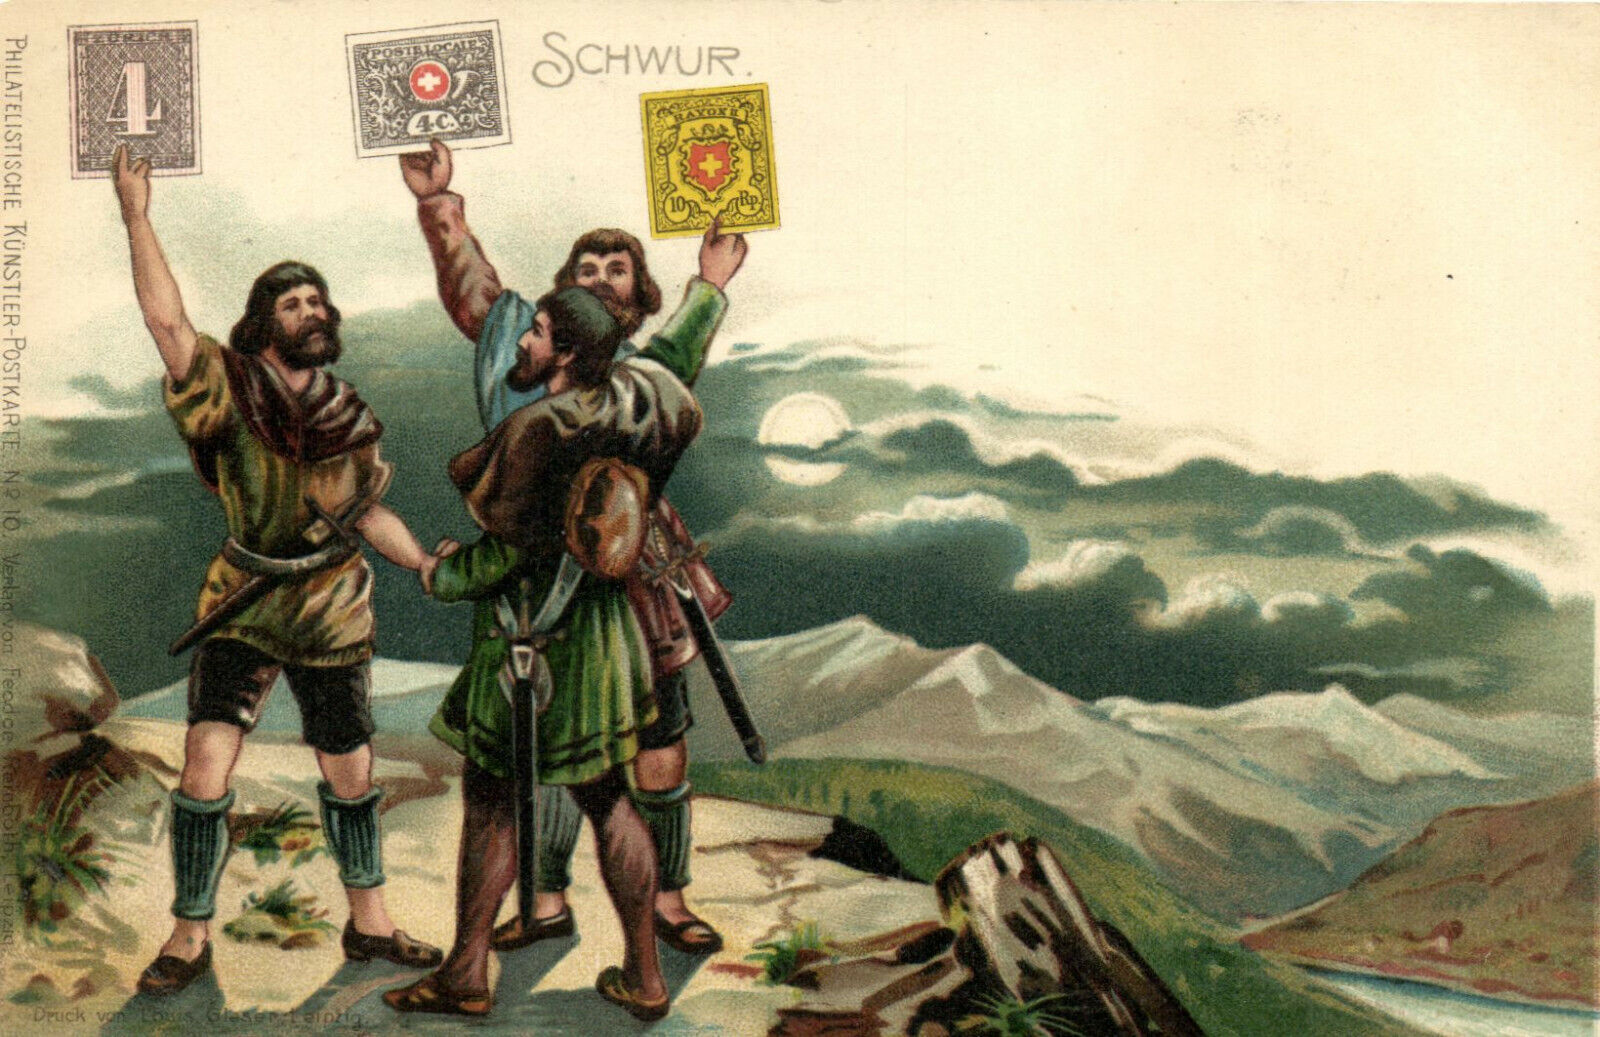 PC CPA SWITZERLAND, SCHWUR, Vintage Postcard (b16588)